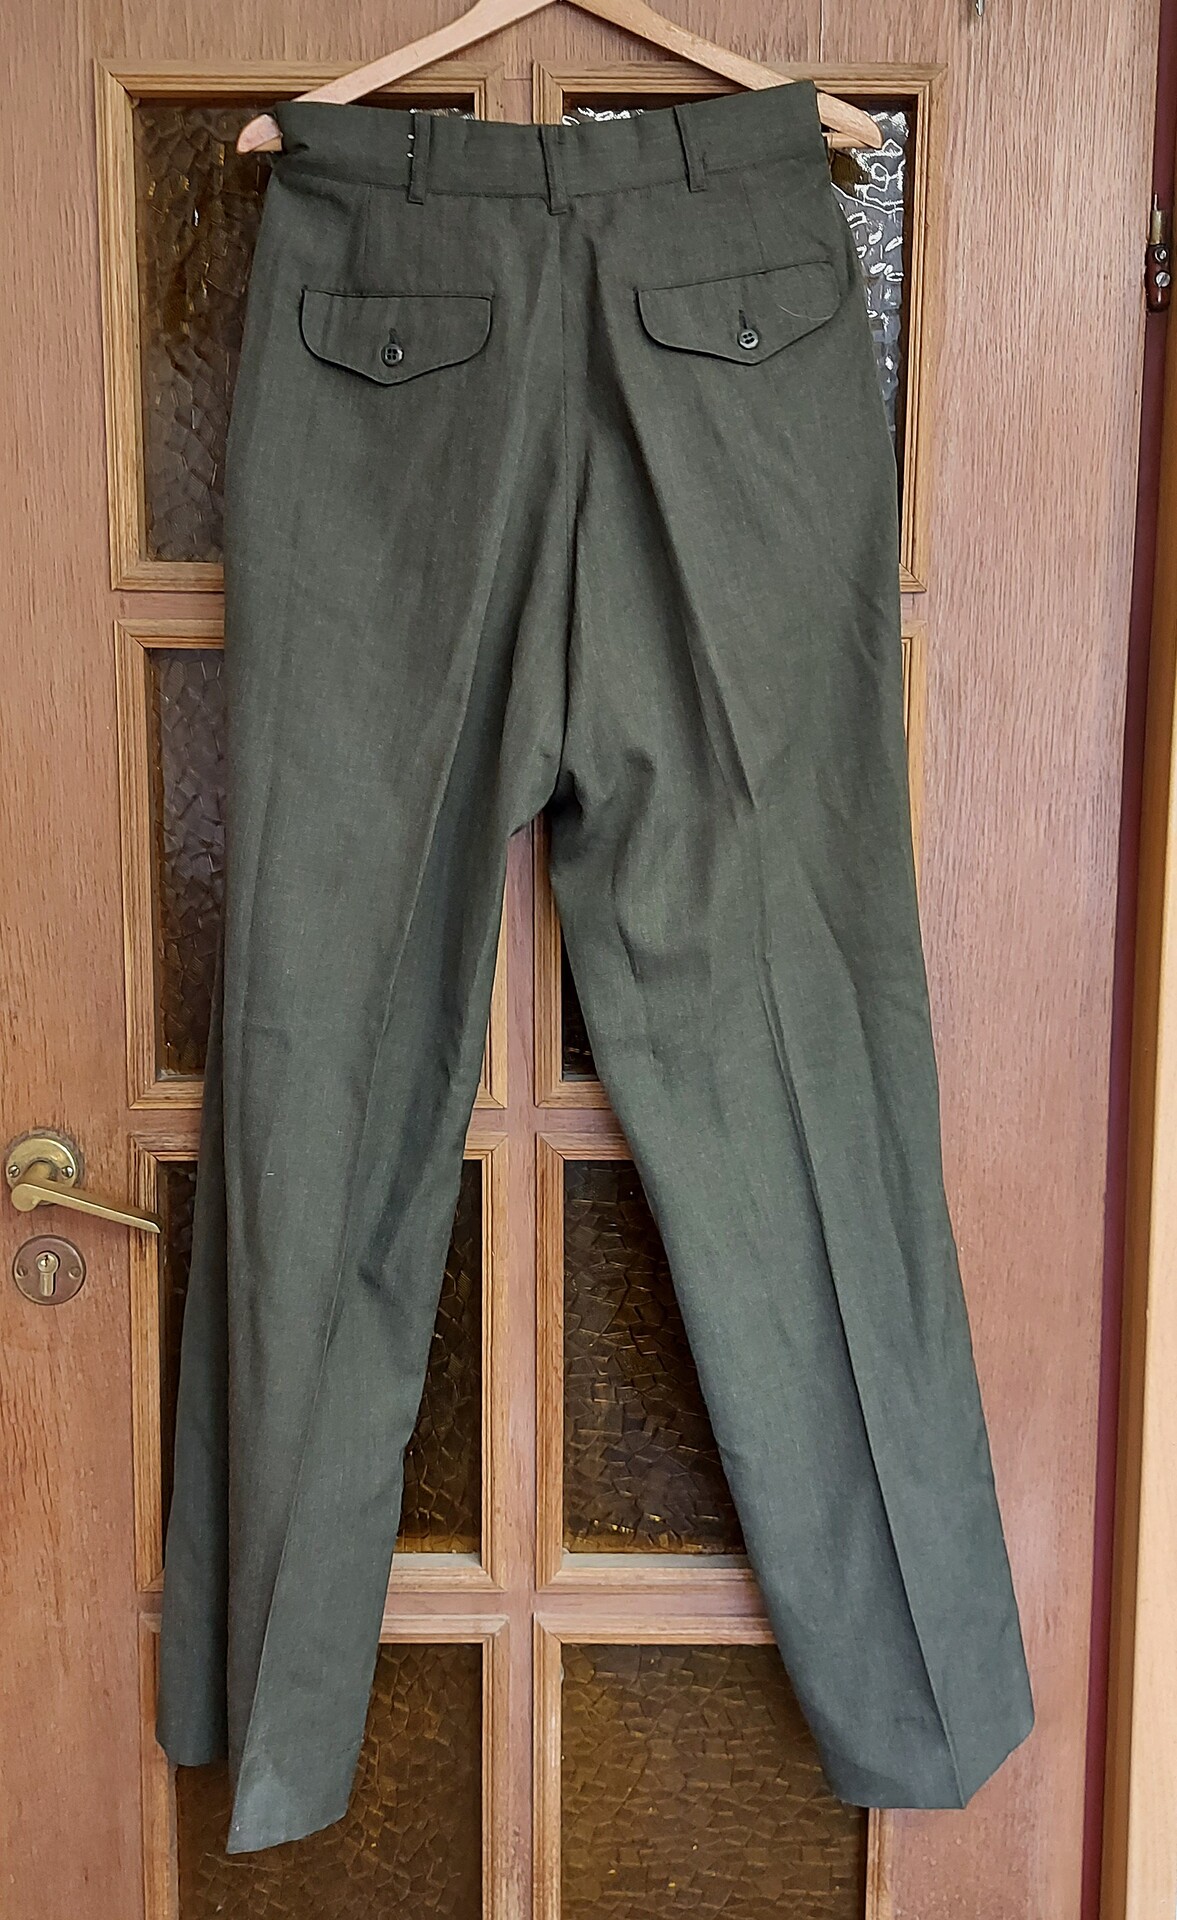 Spodnie Munduru wyjsciowego USMC - Zielone - 30R